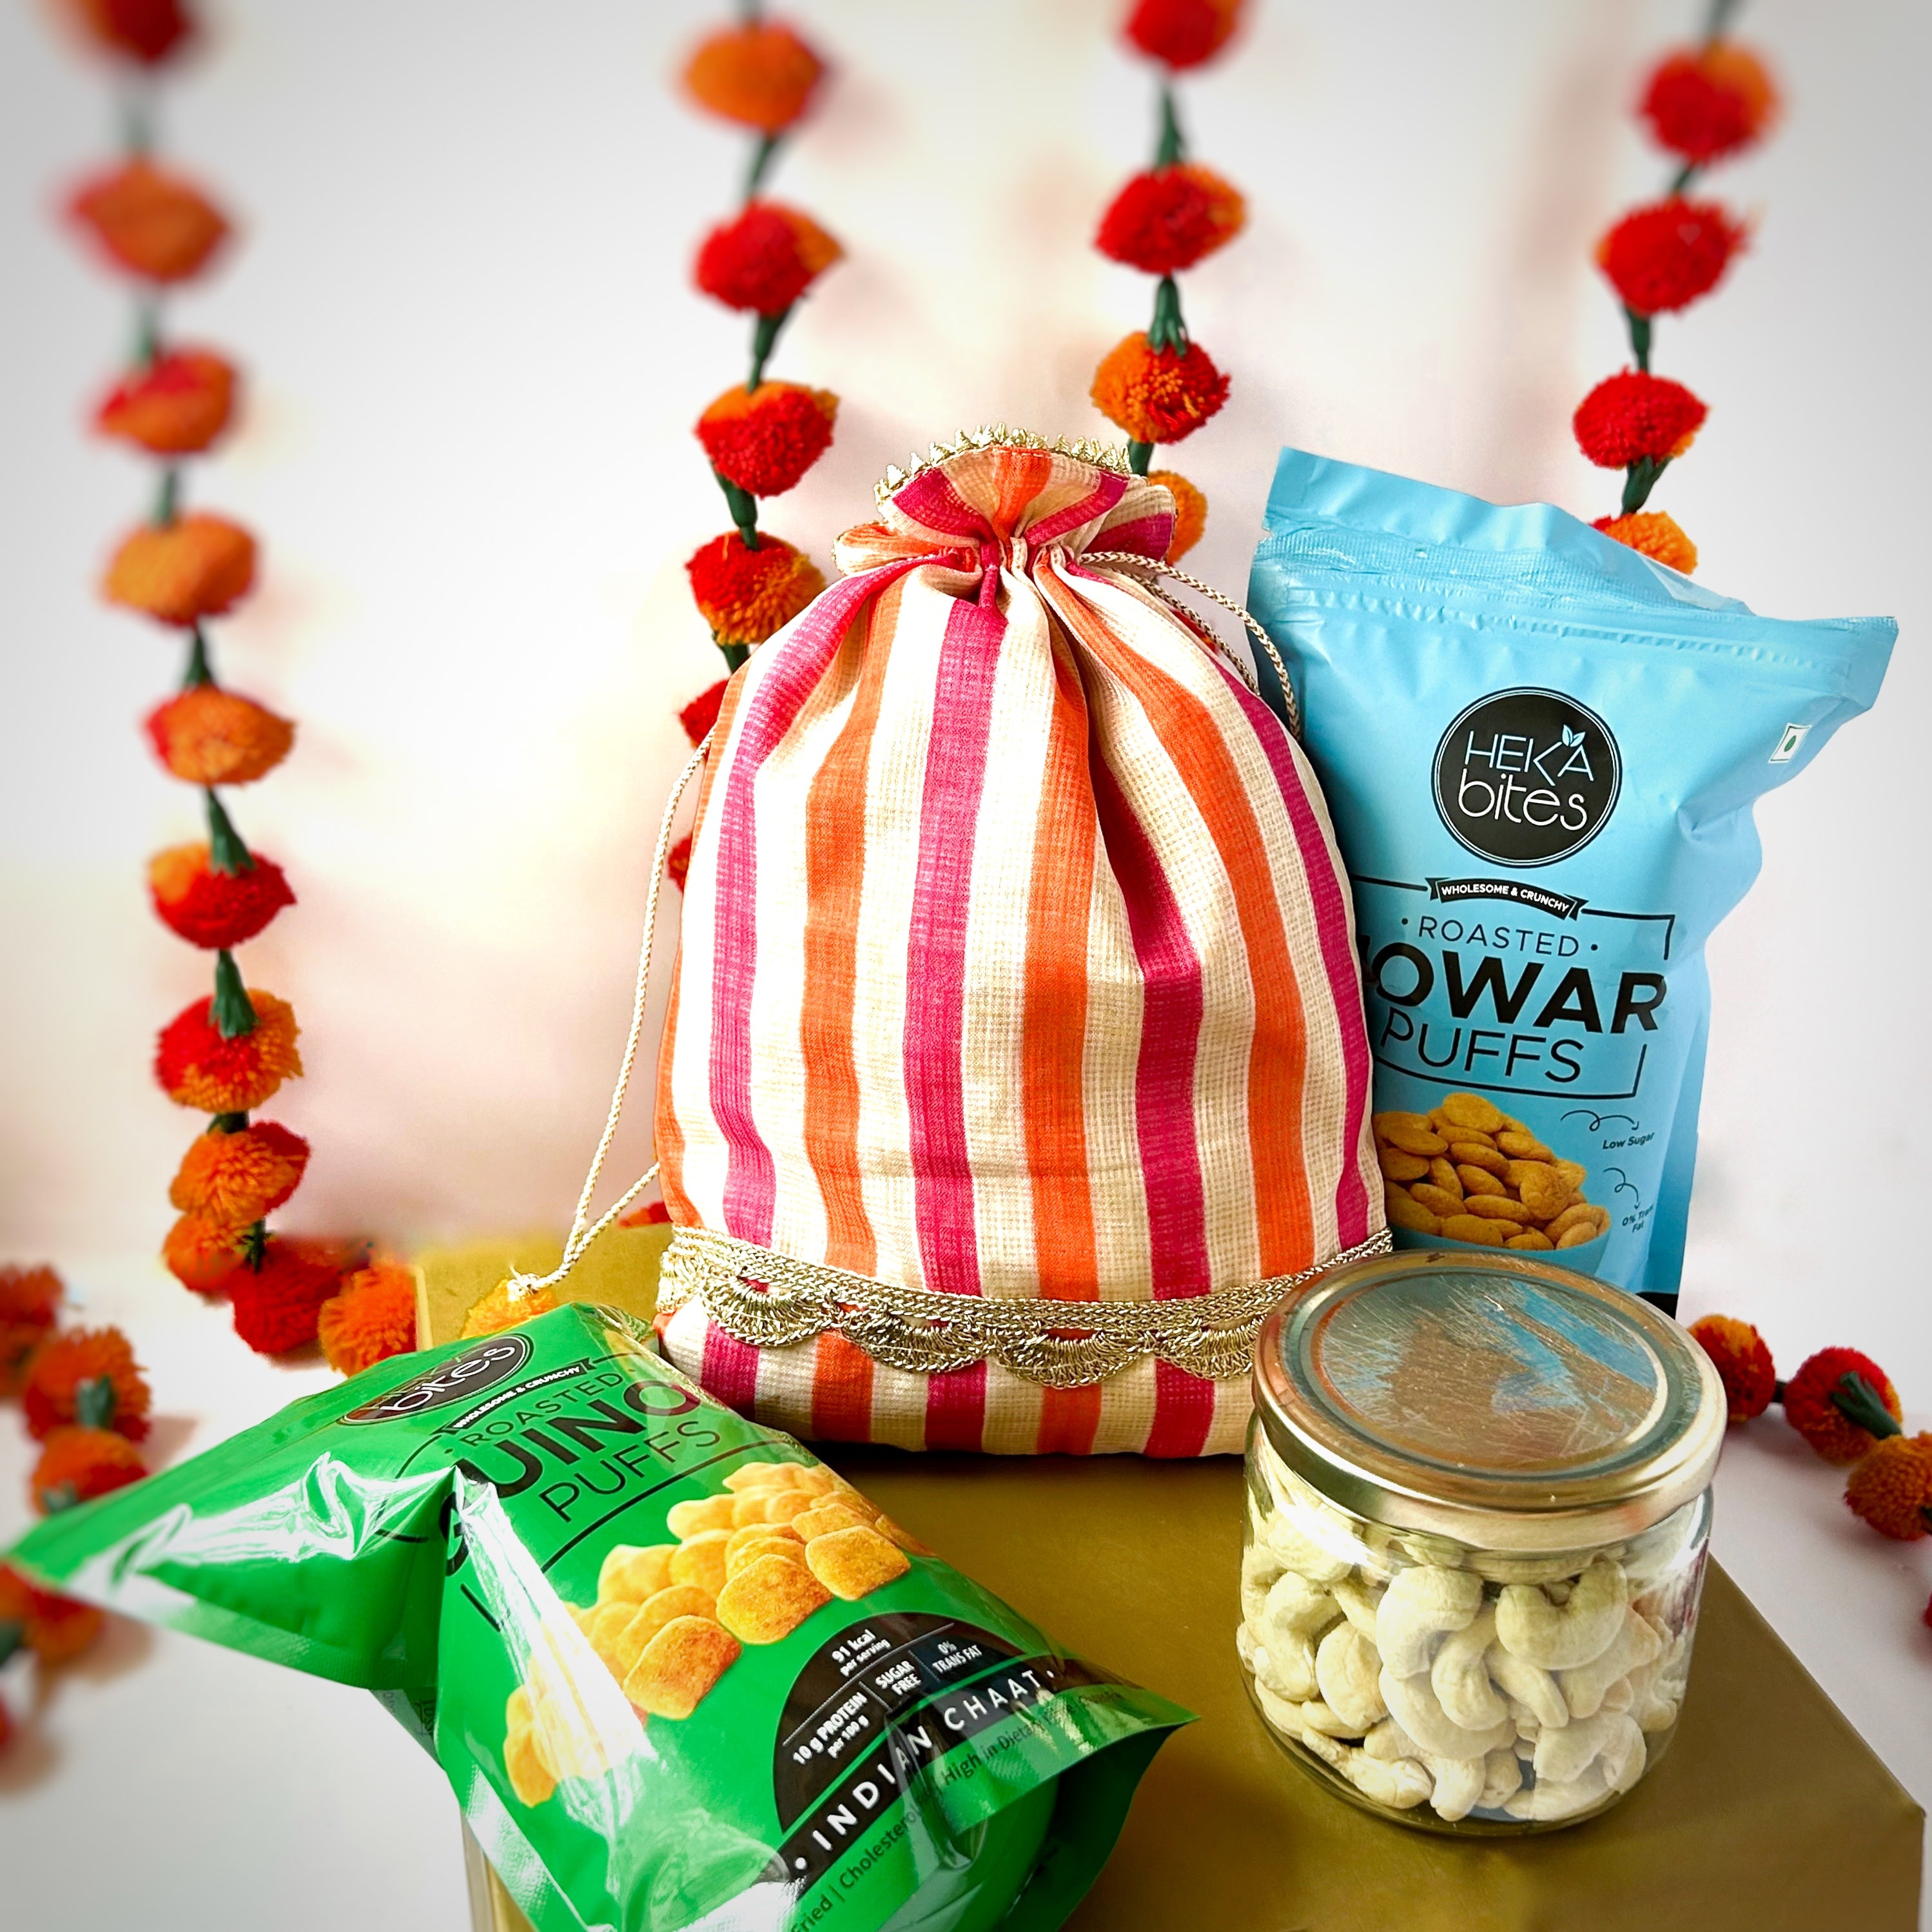 Heka Bites Hamper - Raw Cashew , Roasted Jowar Puffs & Roasted Quinoa Puffs 215G